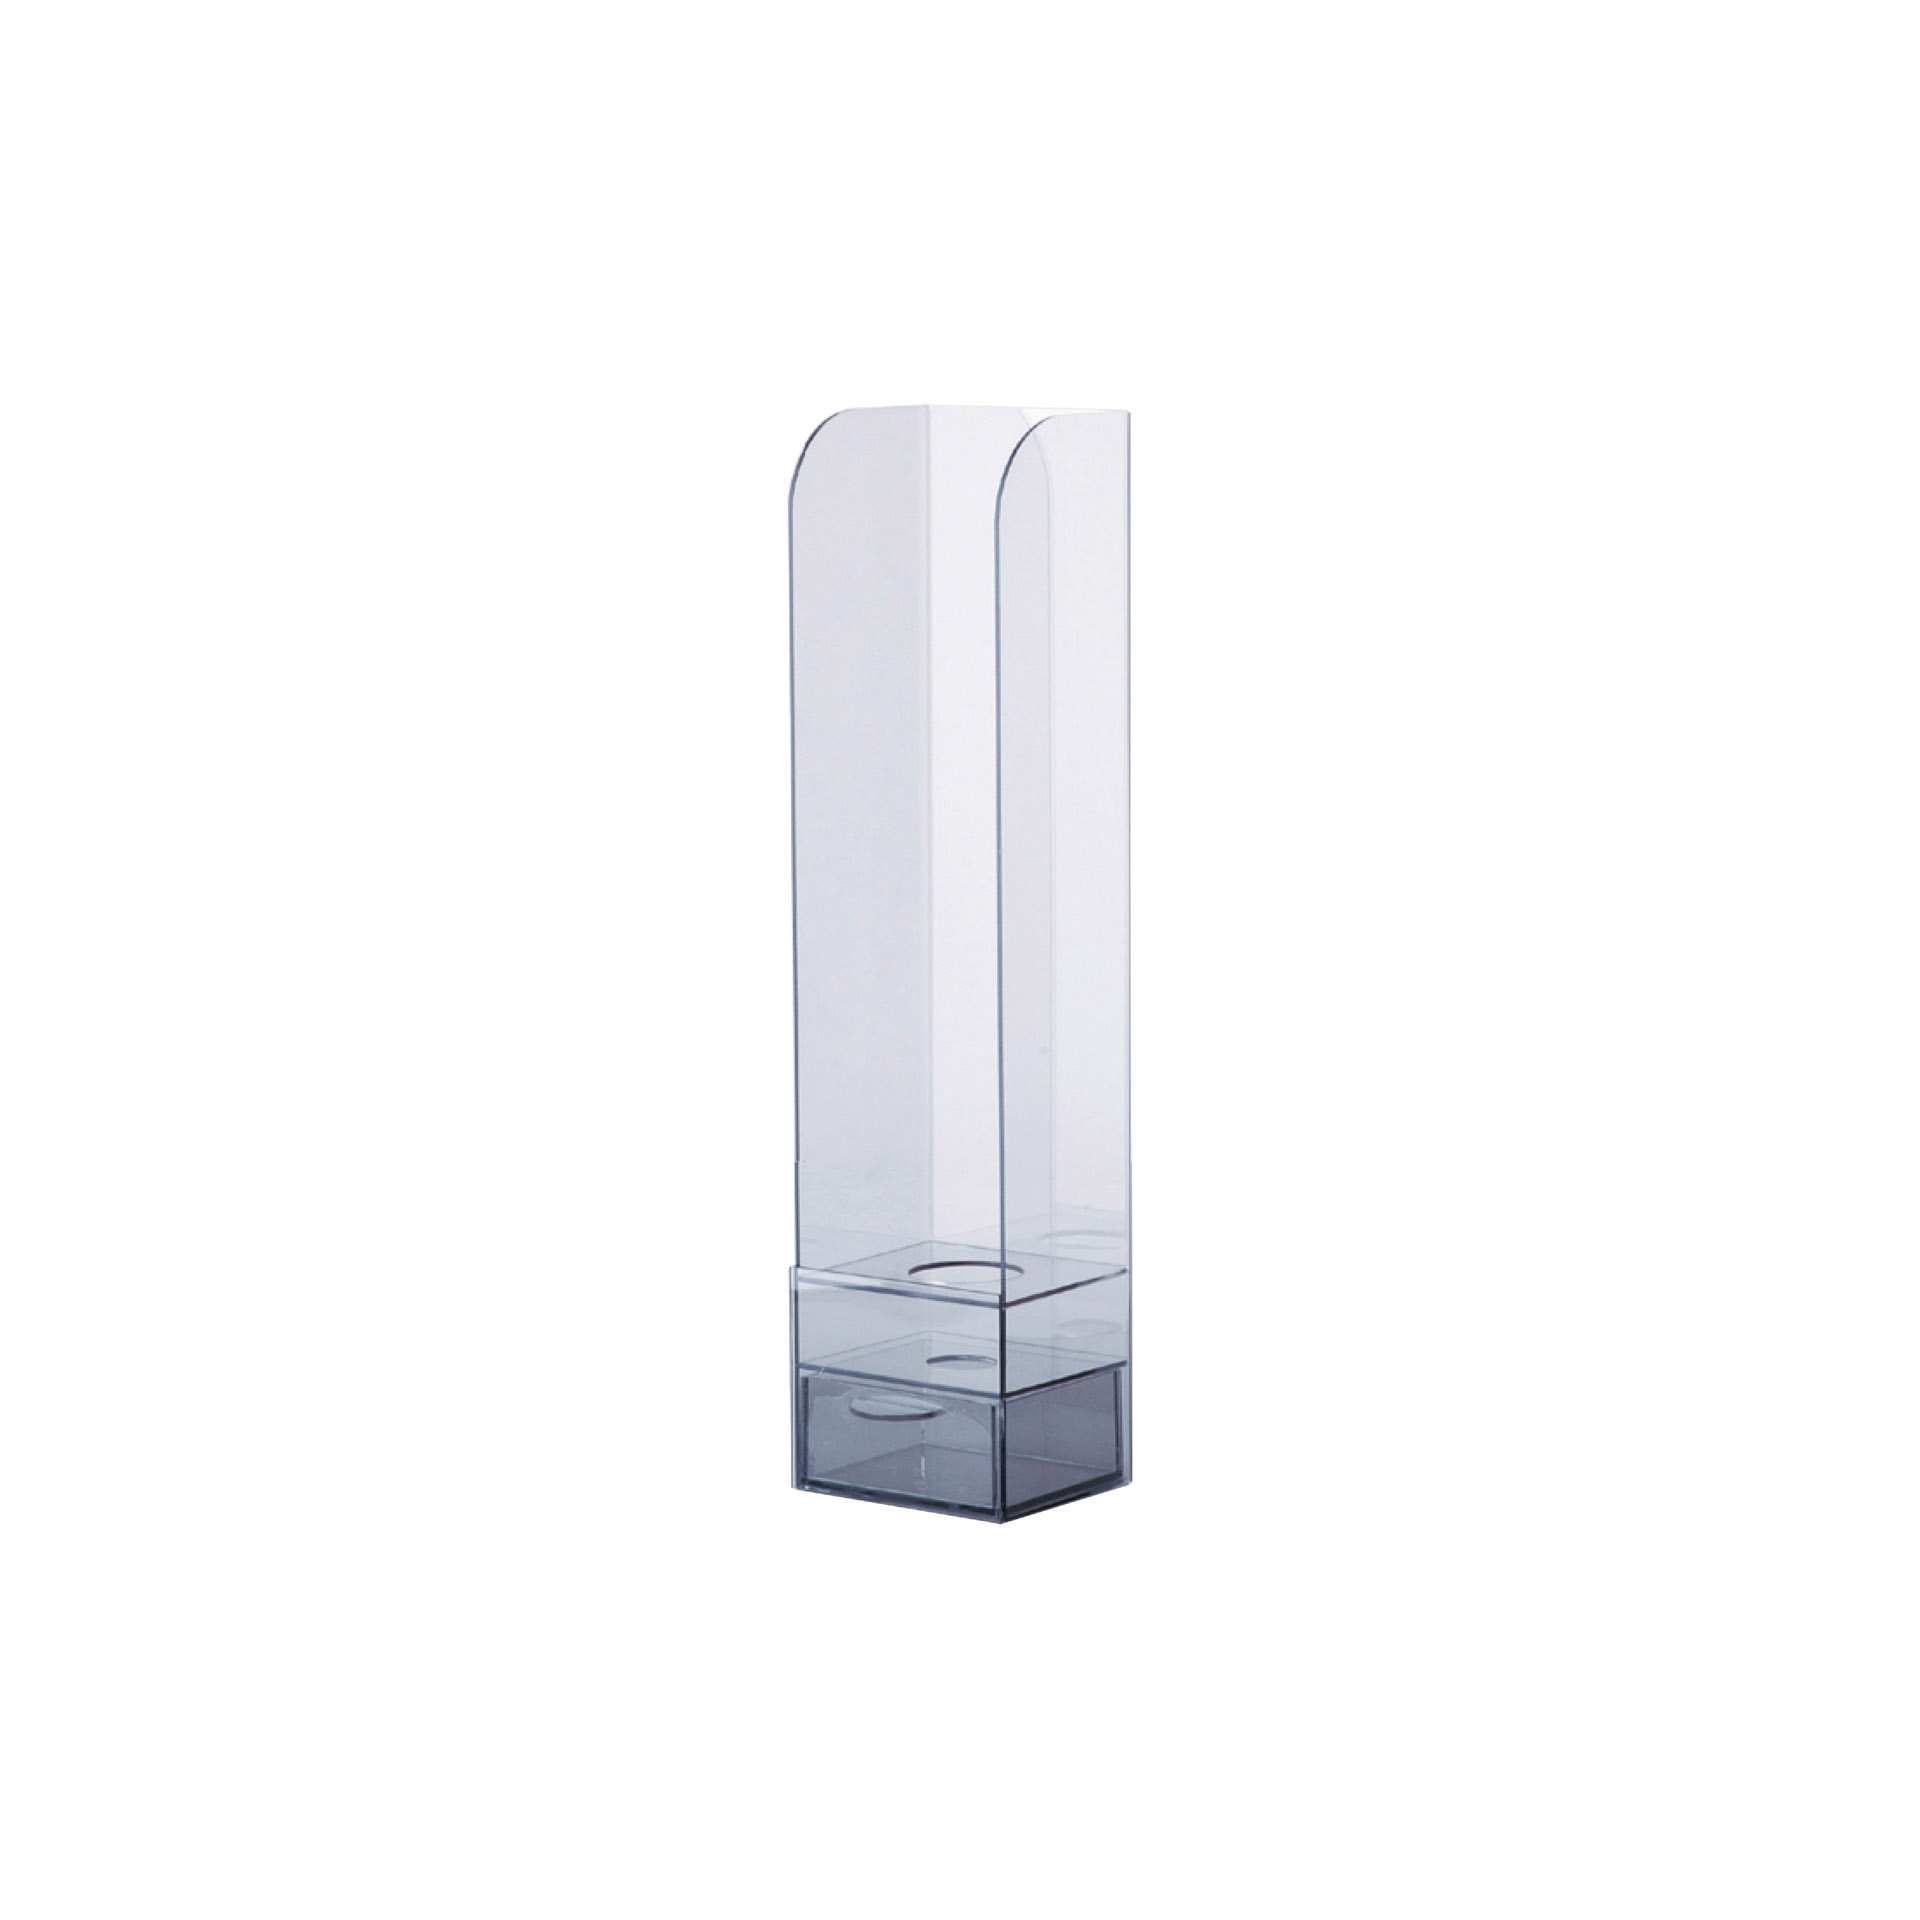 Eistütenhalter - für Maxi-Waffeln - Abm. 12,0 x 10,5 x 50,0 cm - PMMA - 172200-C